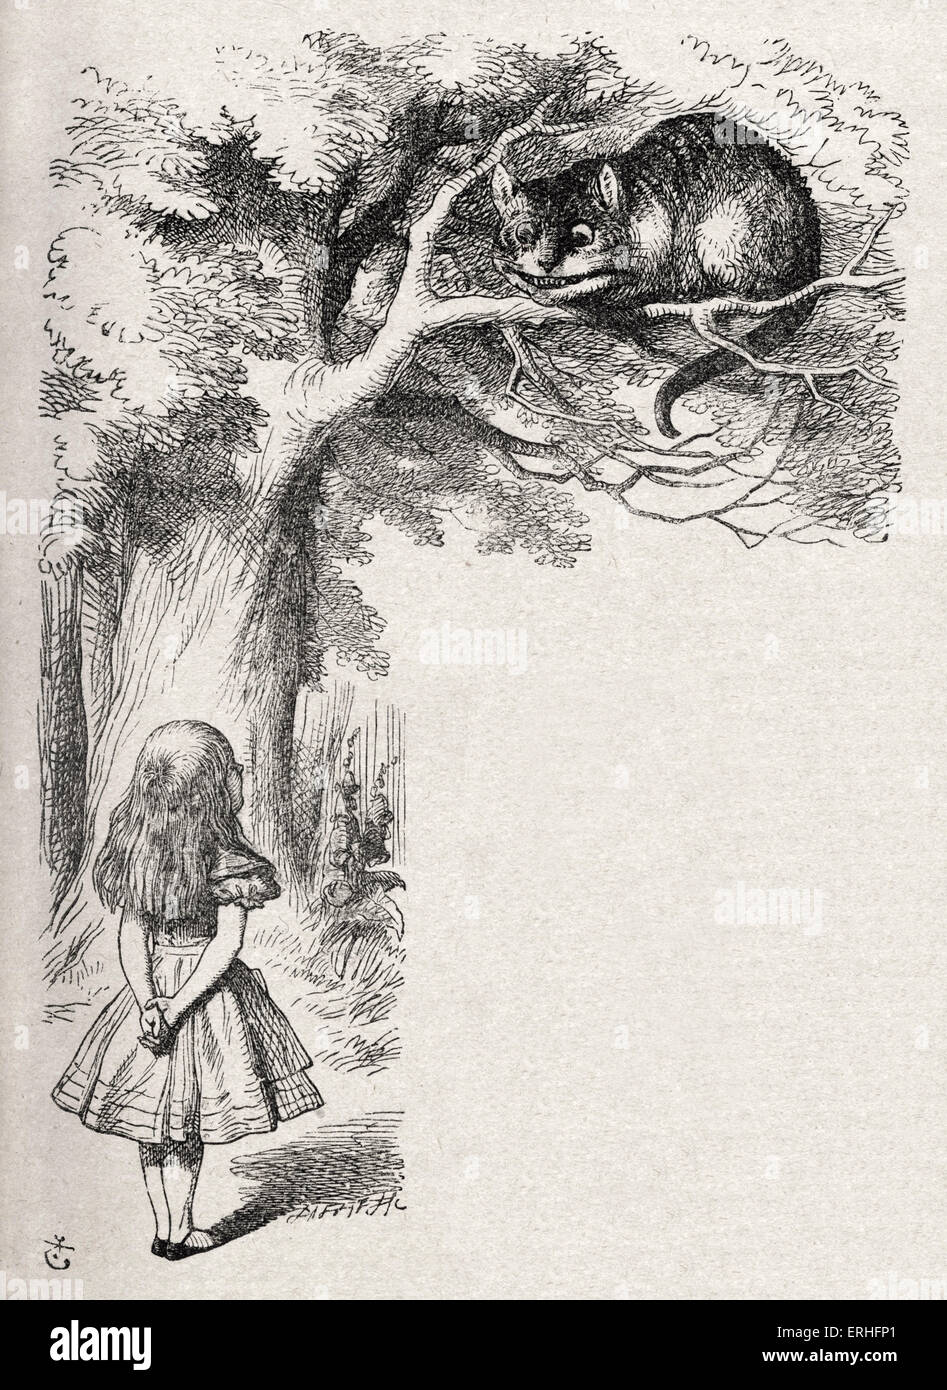 Alice et le chat de Cheshire, d'Alice au Pays des merveilles de Lewis Carroll (Charles Lutwidge Dodgson), anglais et auteur de livres pour enfants Banque D'Images